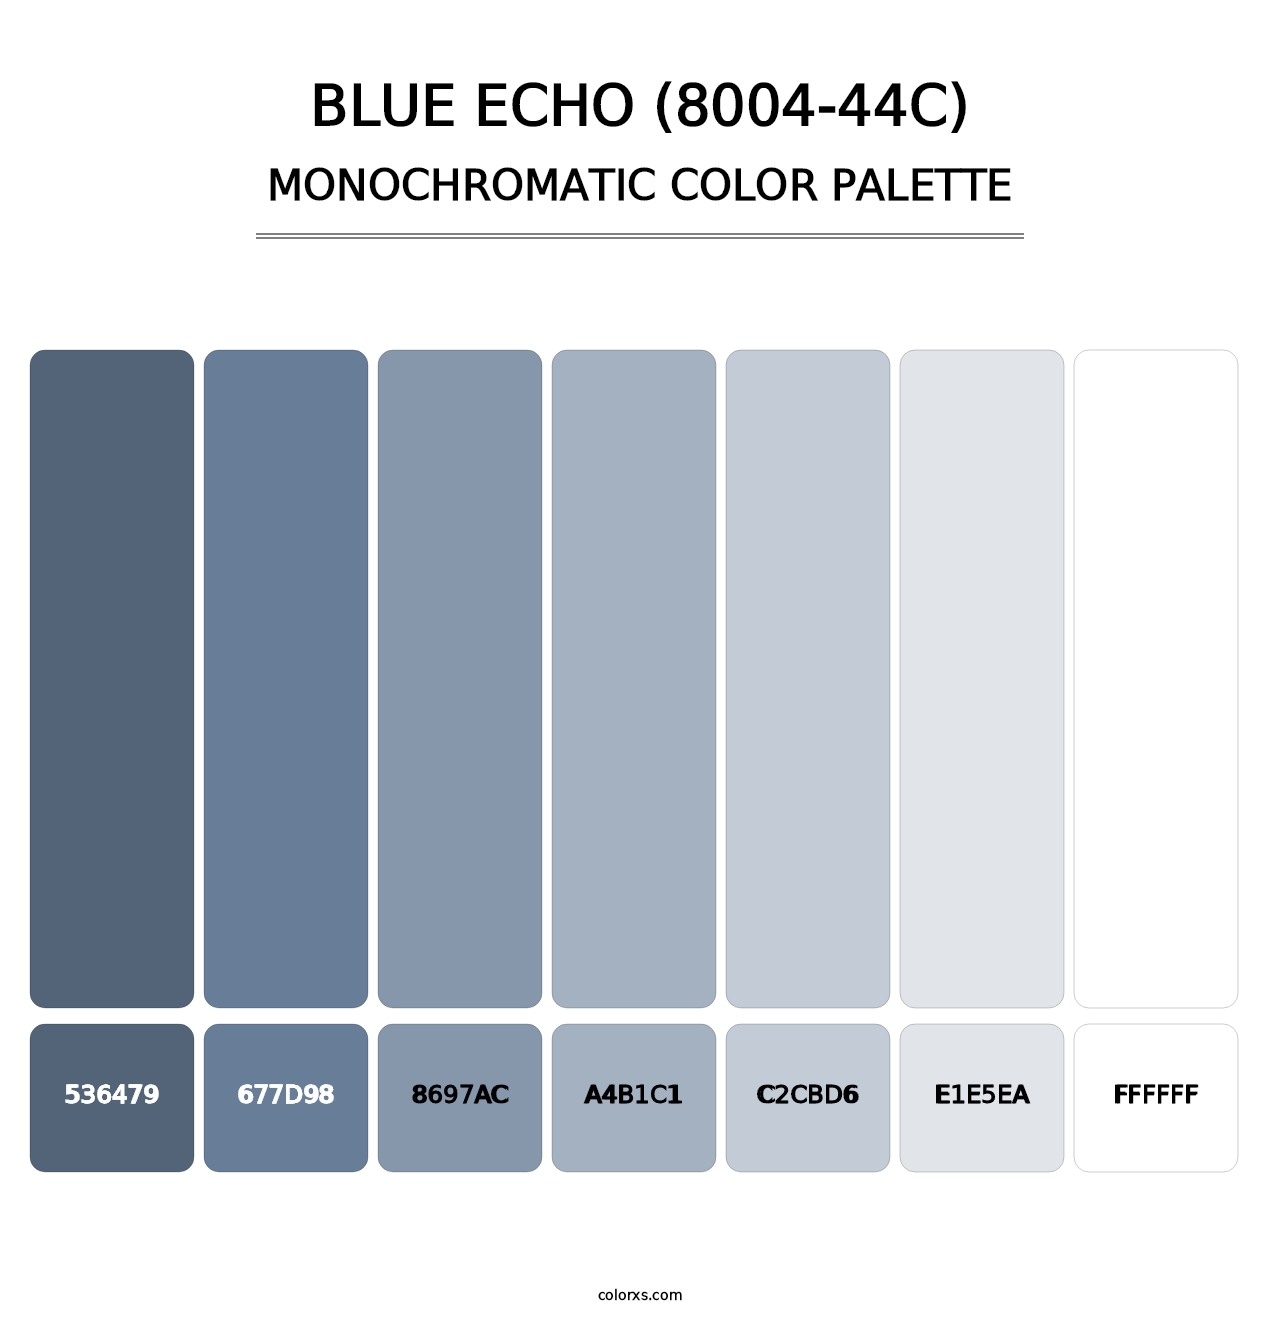 Blue Echo (8004-44C) - Monochromatic Color Palette